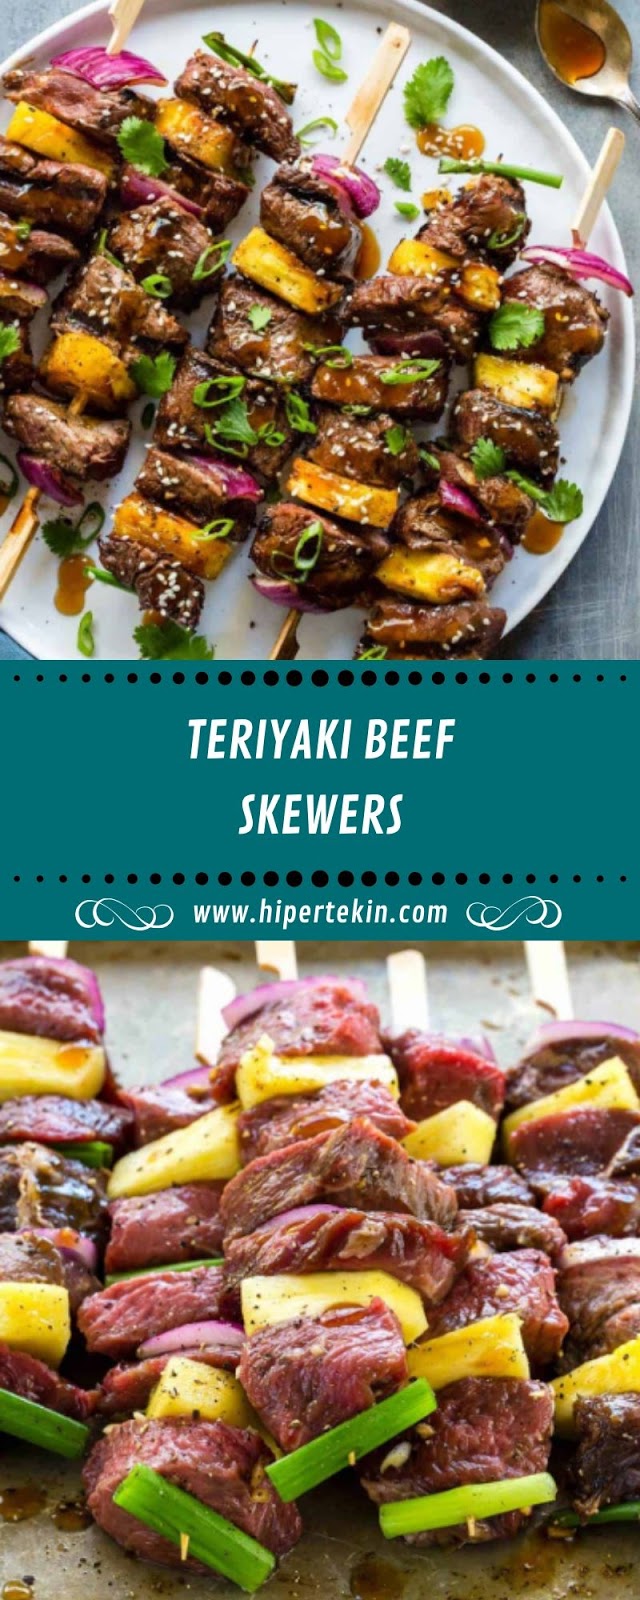 TERIYAKI BEEF SKEWERS